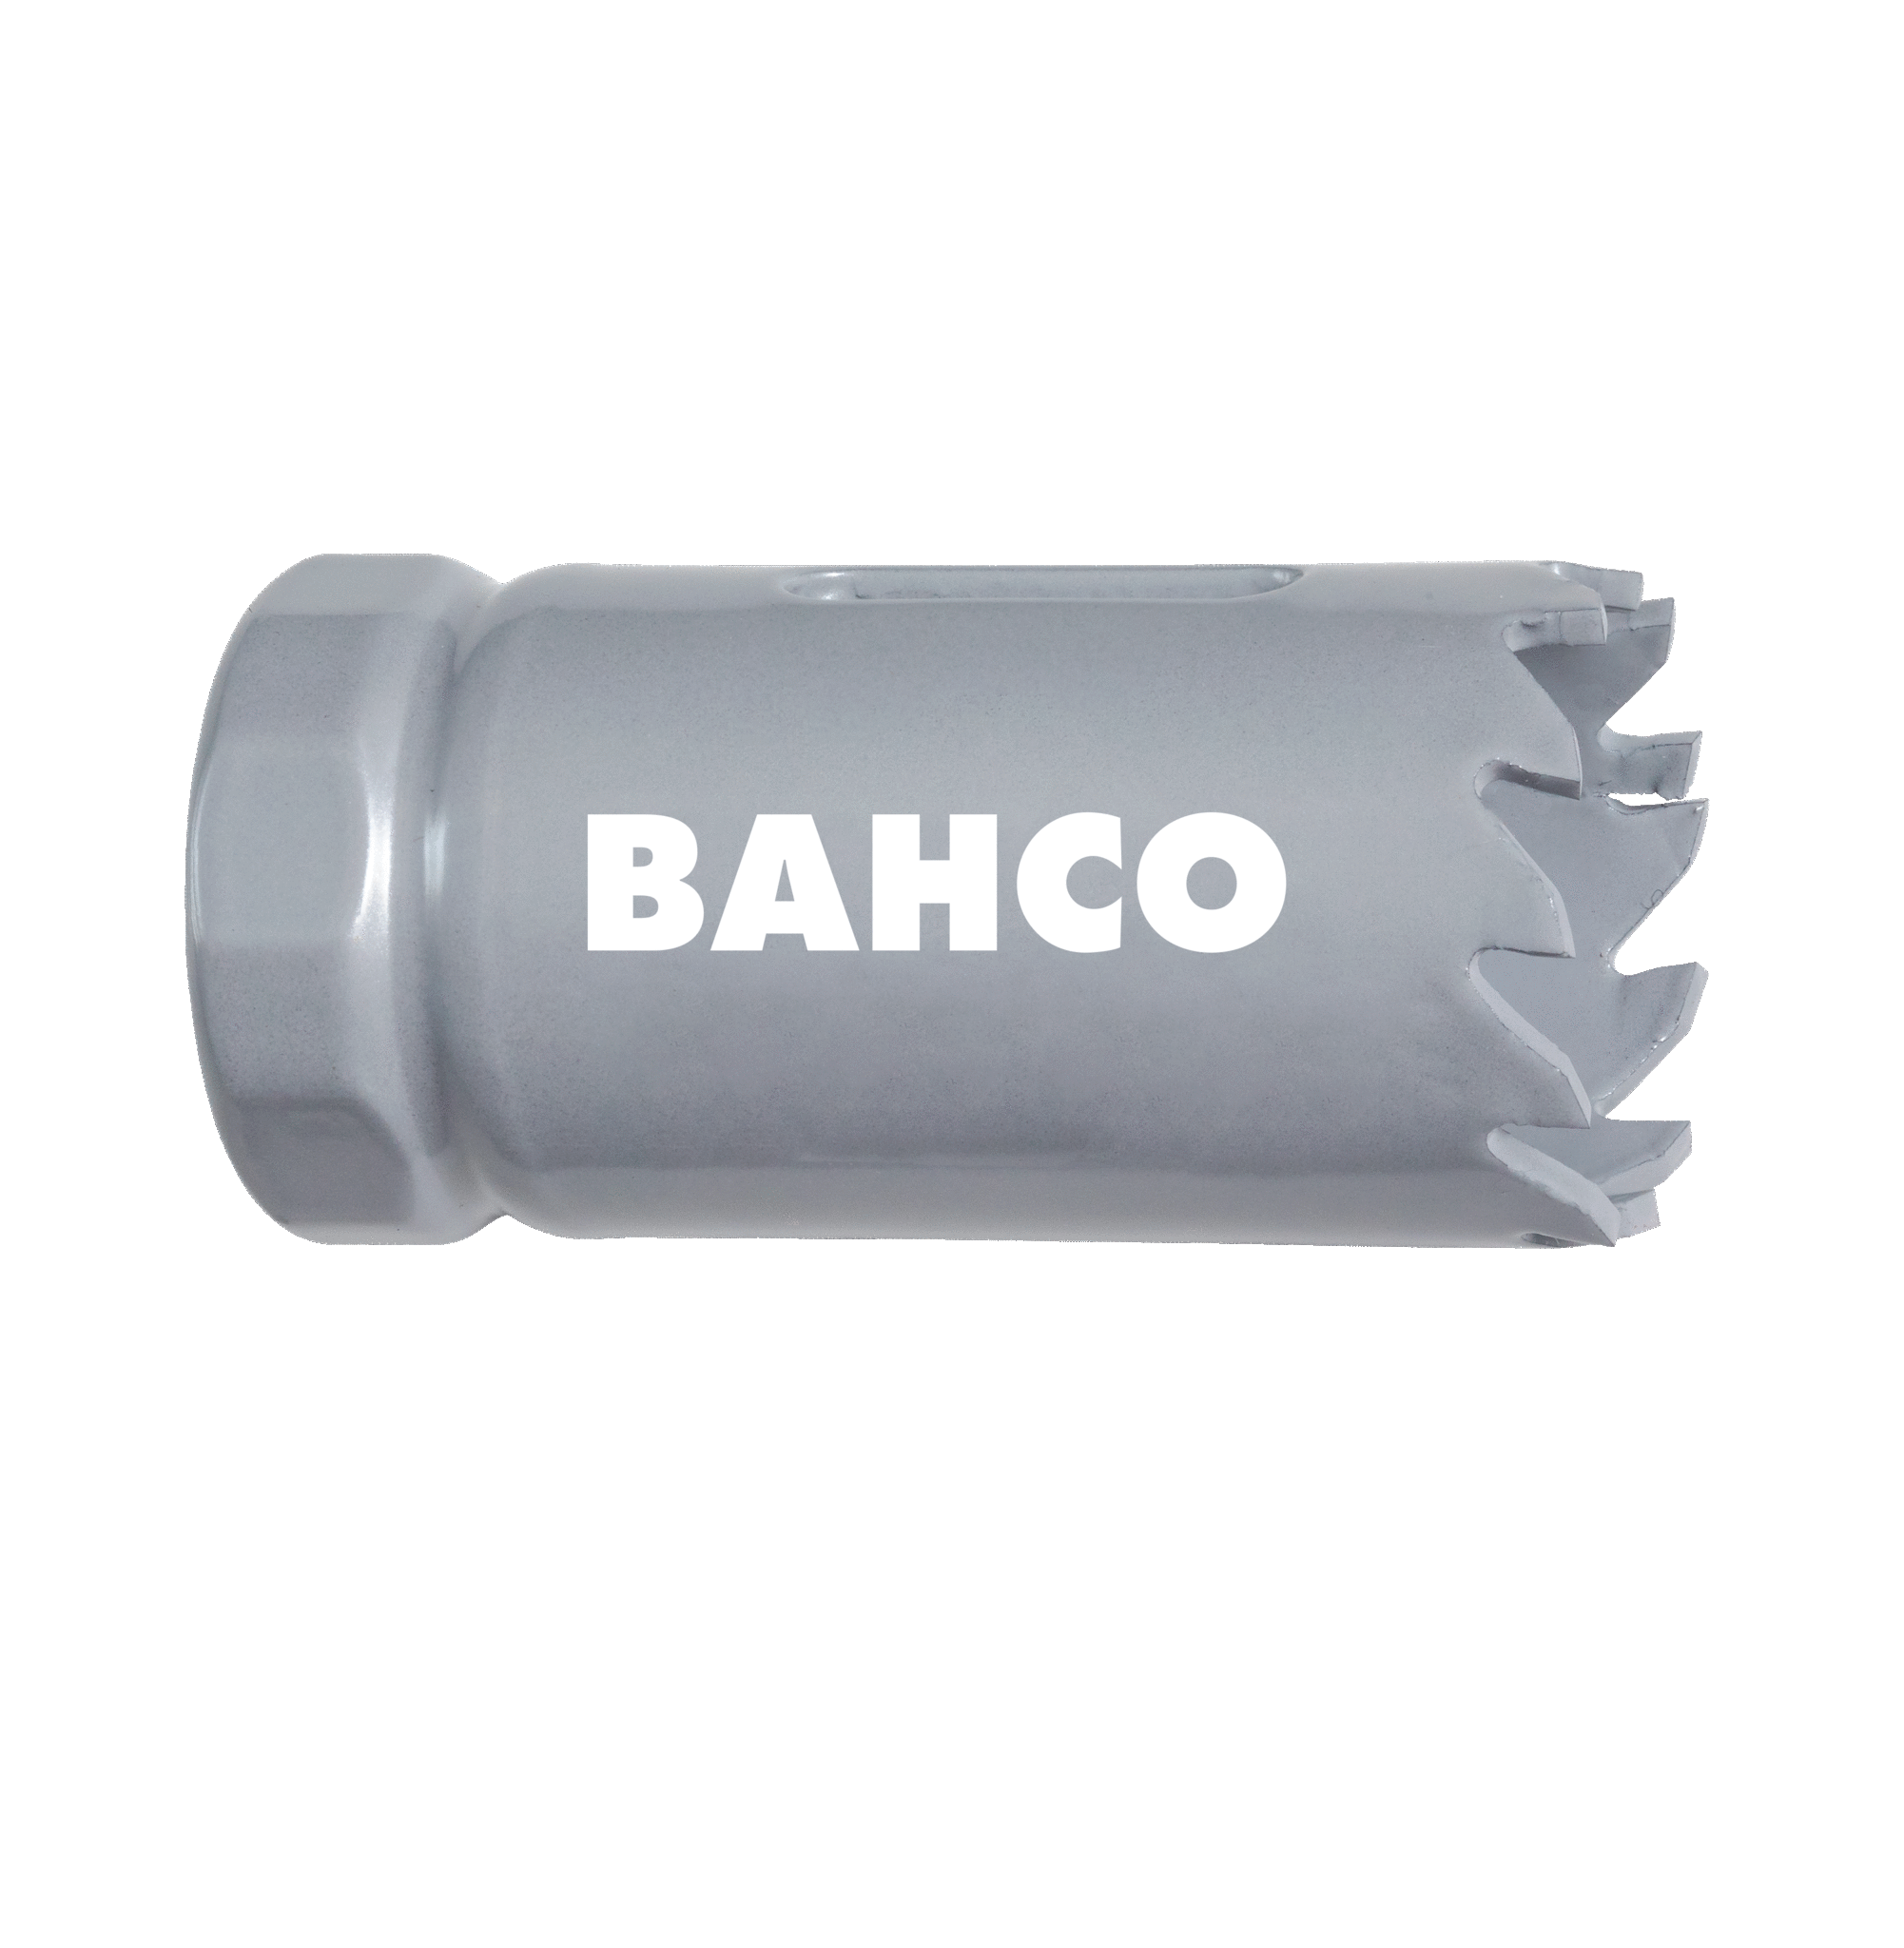 Кольцевые пилы с твердосплавными напайками BAHCO 3832-57